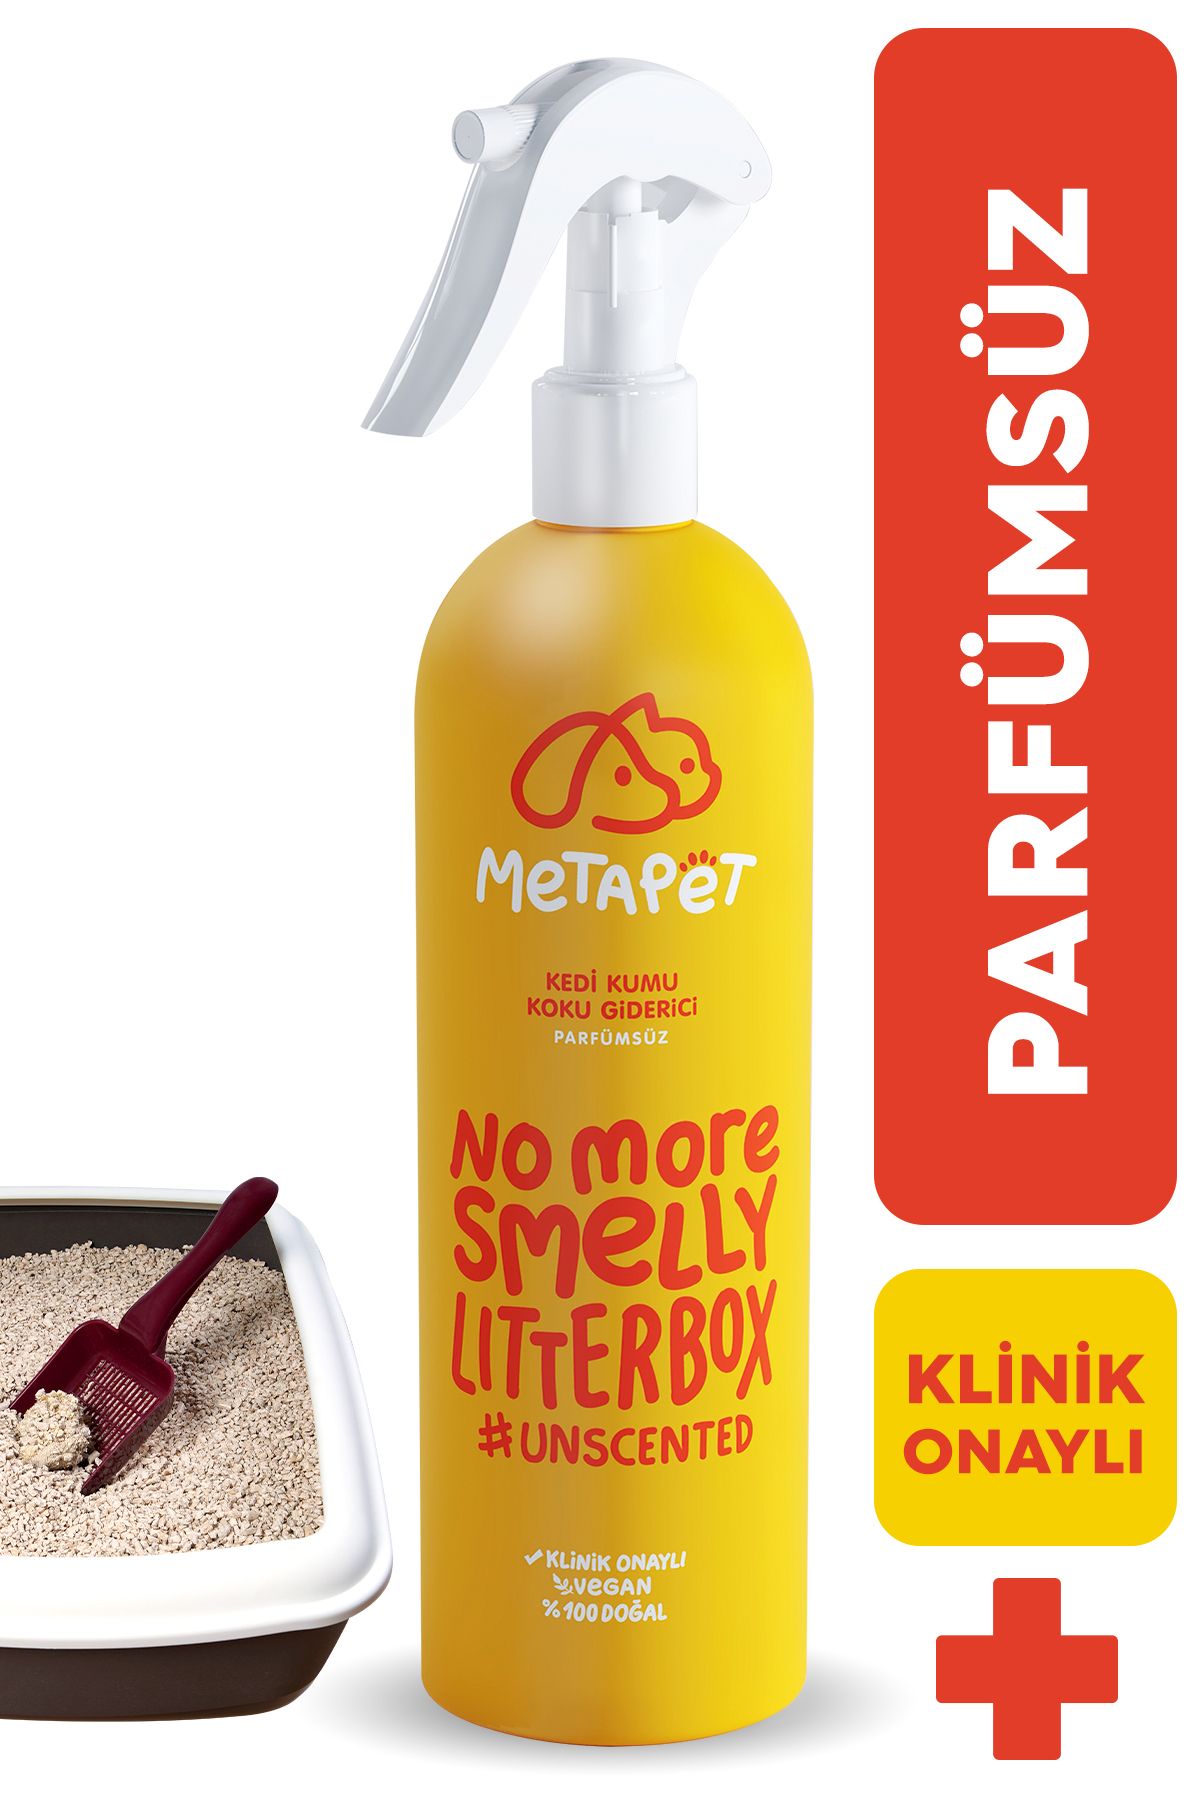 Metapet Parfümsüz Kedi Kumu Koku Giderici, Doğal Ve Kokusuz/naturel Kedi Tuvaleti Için Sprey, 400 ml